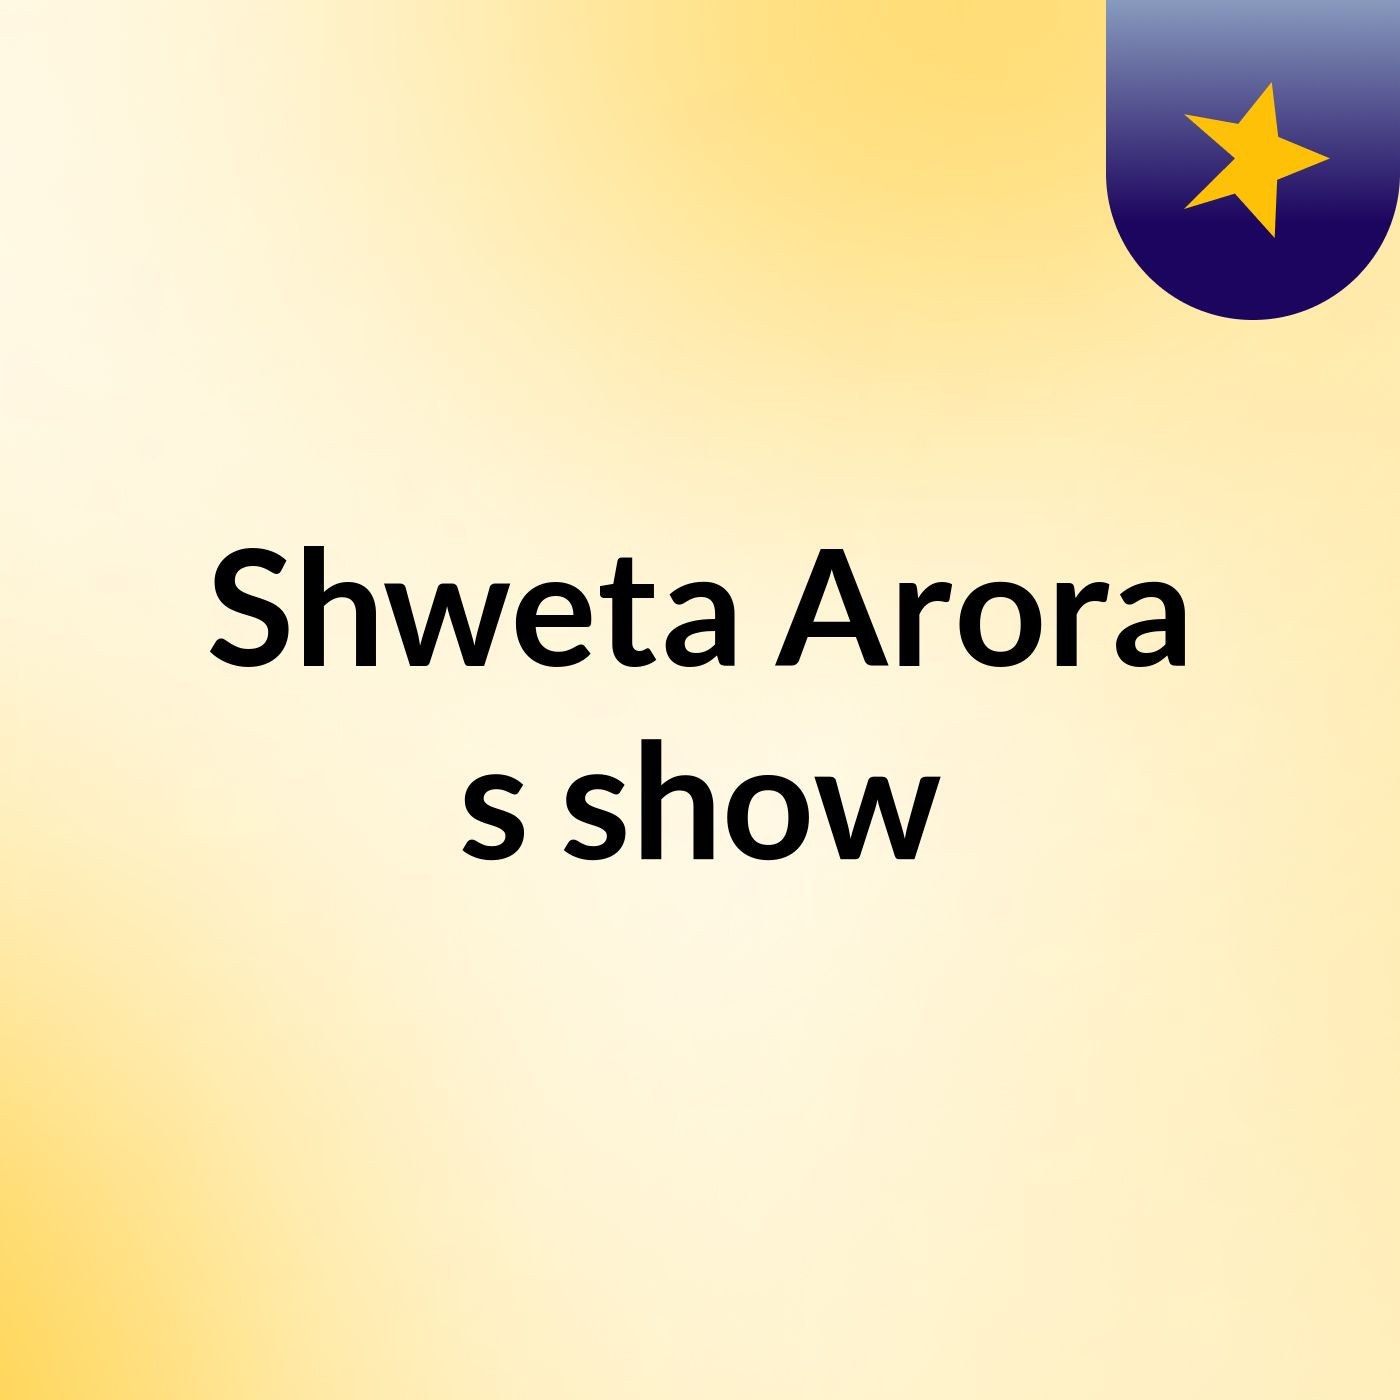 Shweta Arora's show